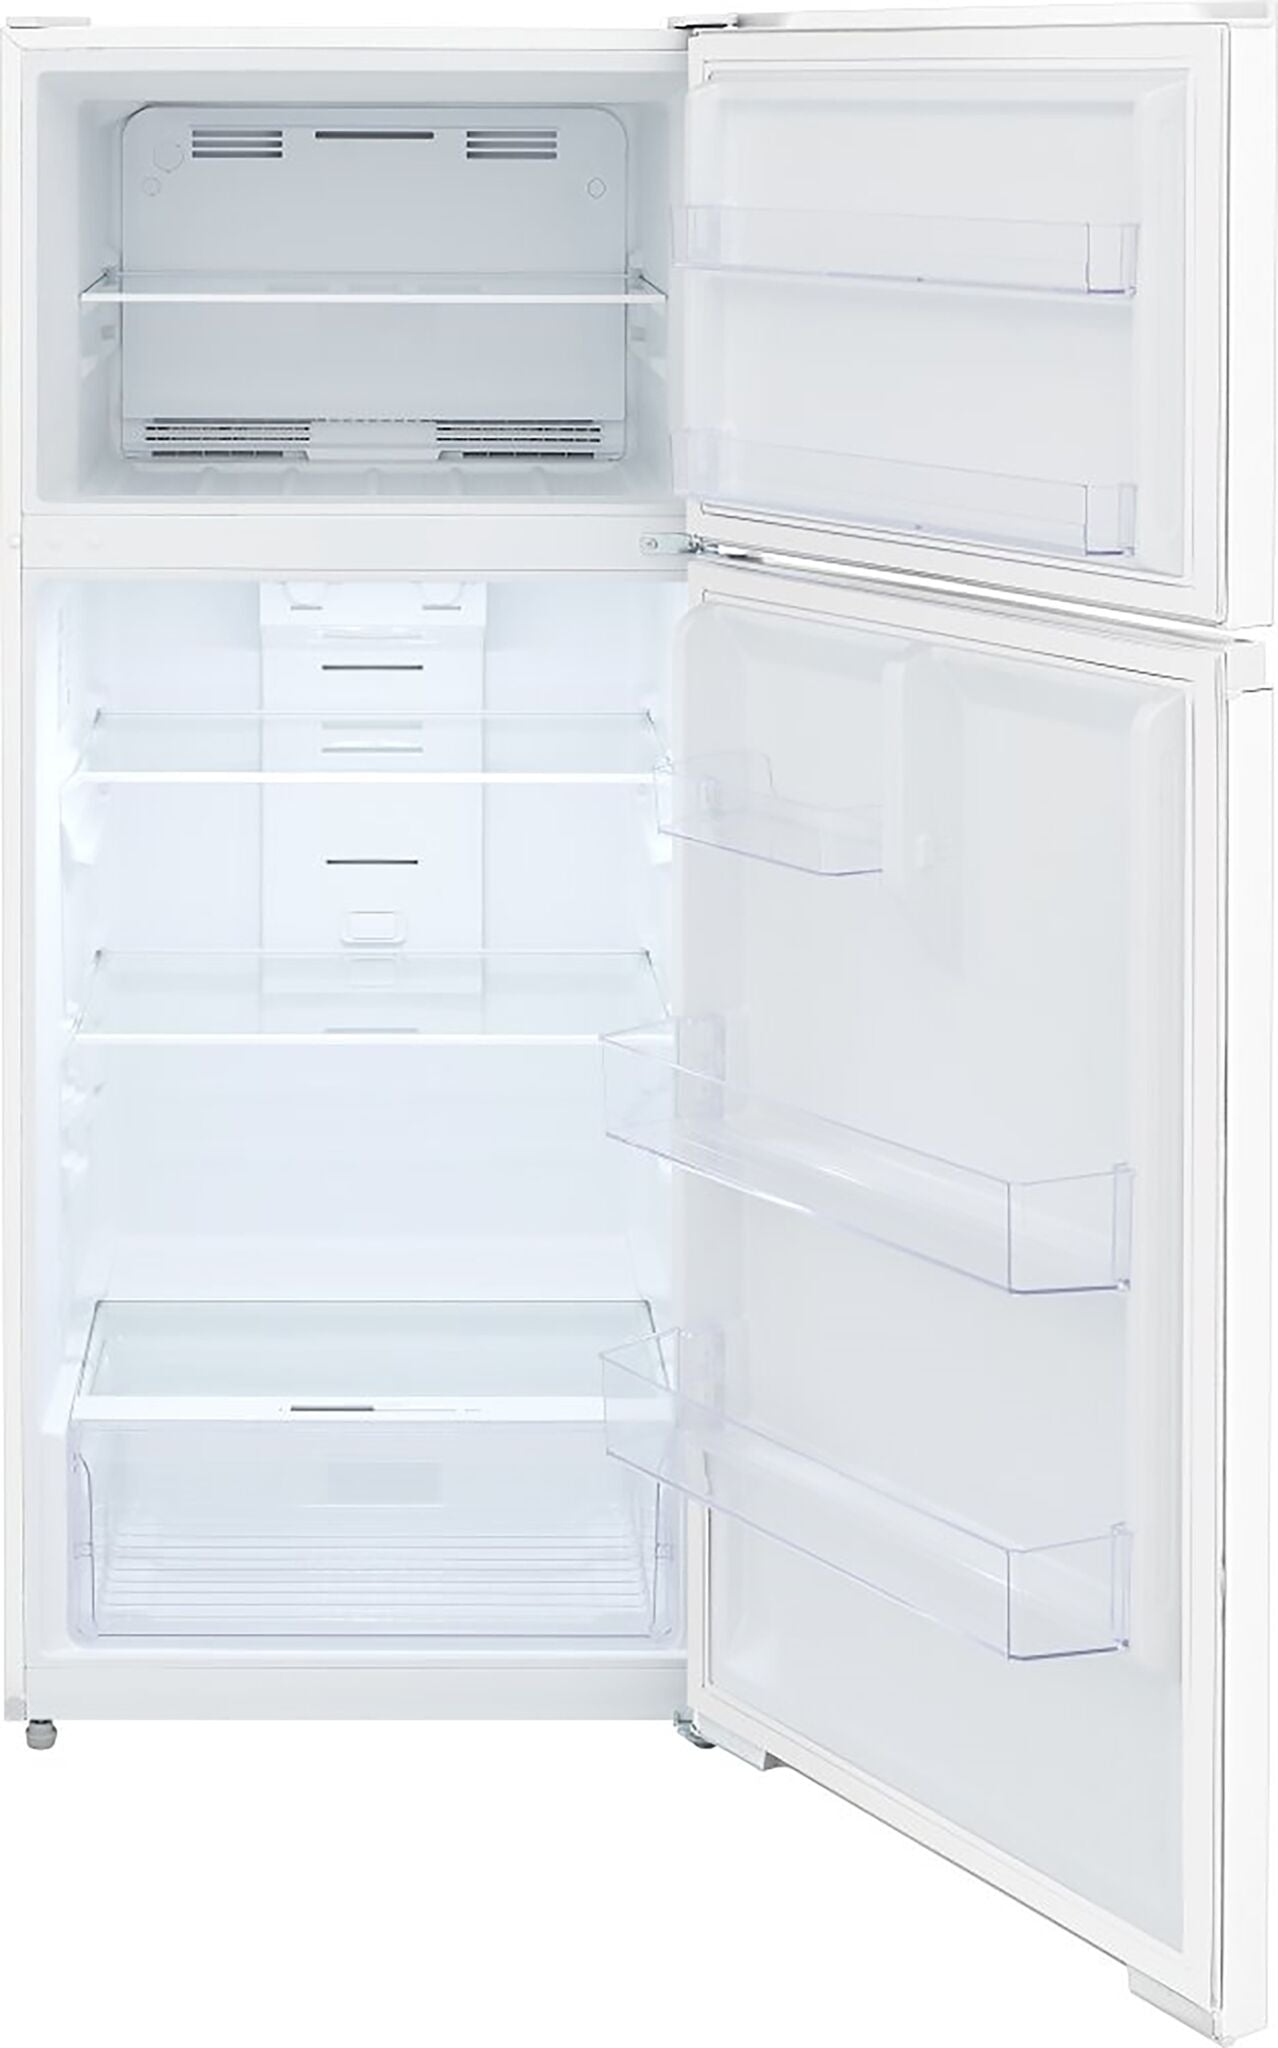 Frigidaire White Top Mount Refrigerator (16.03 Cu. Ft.) - FRTE1622AW